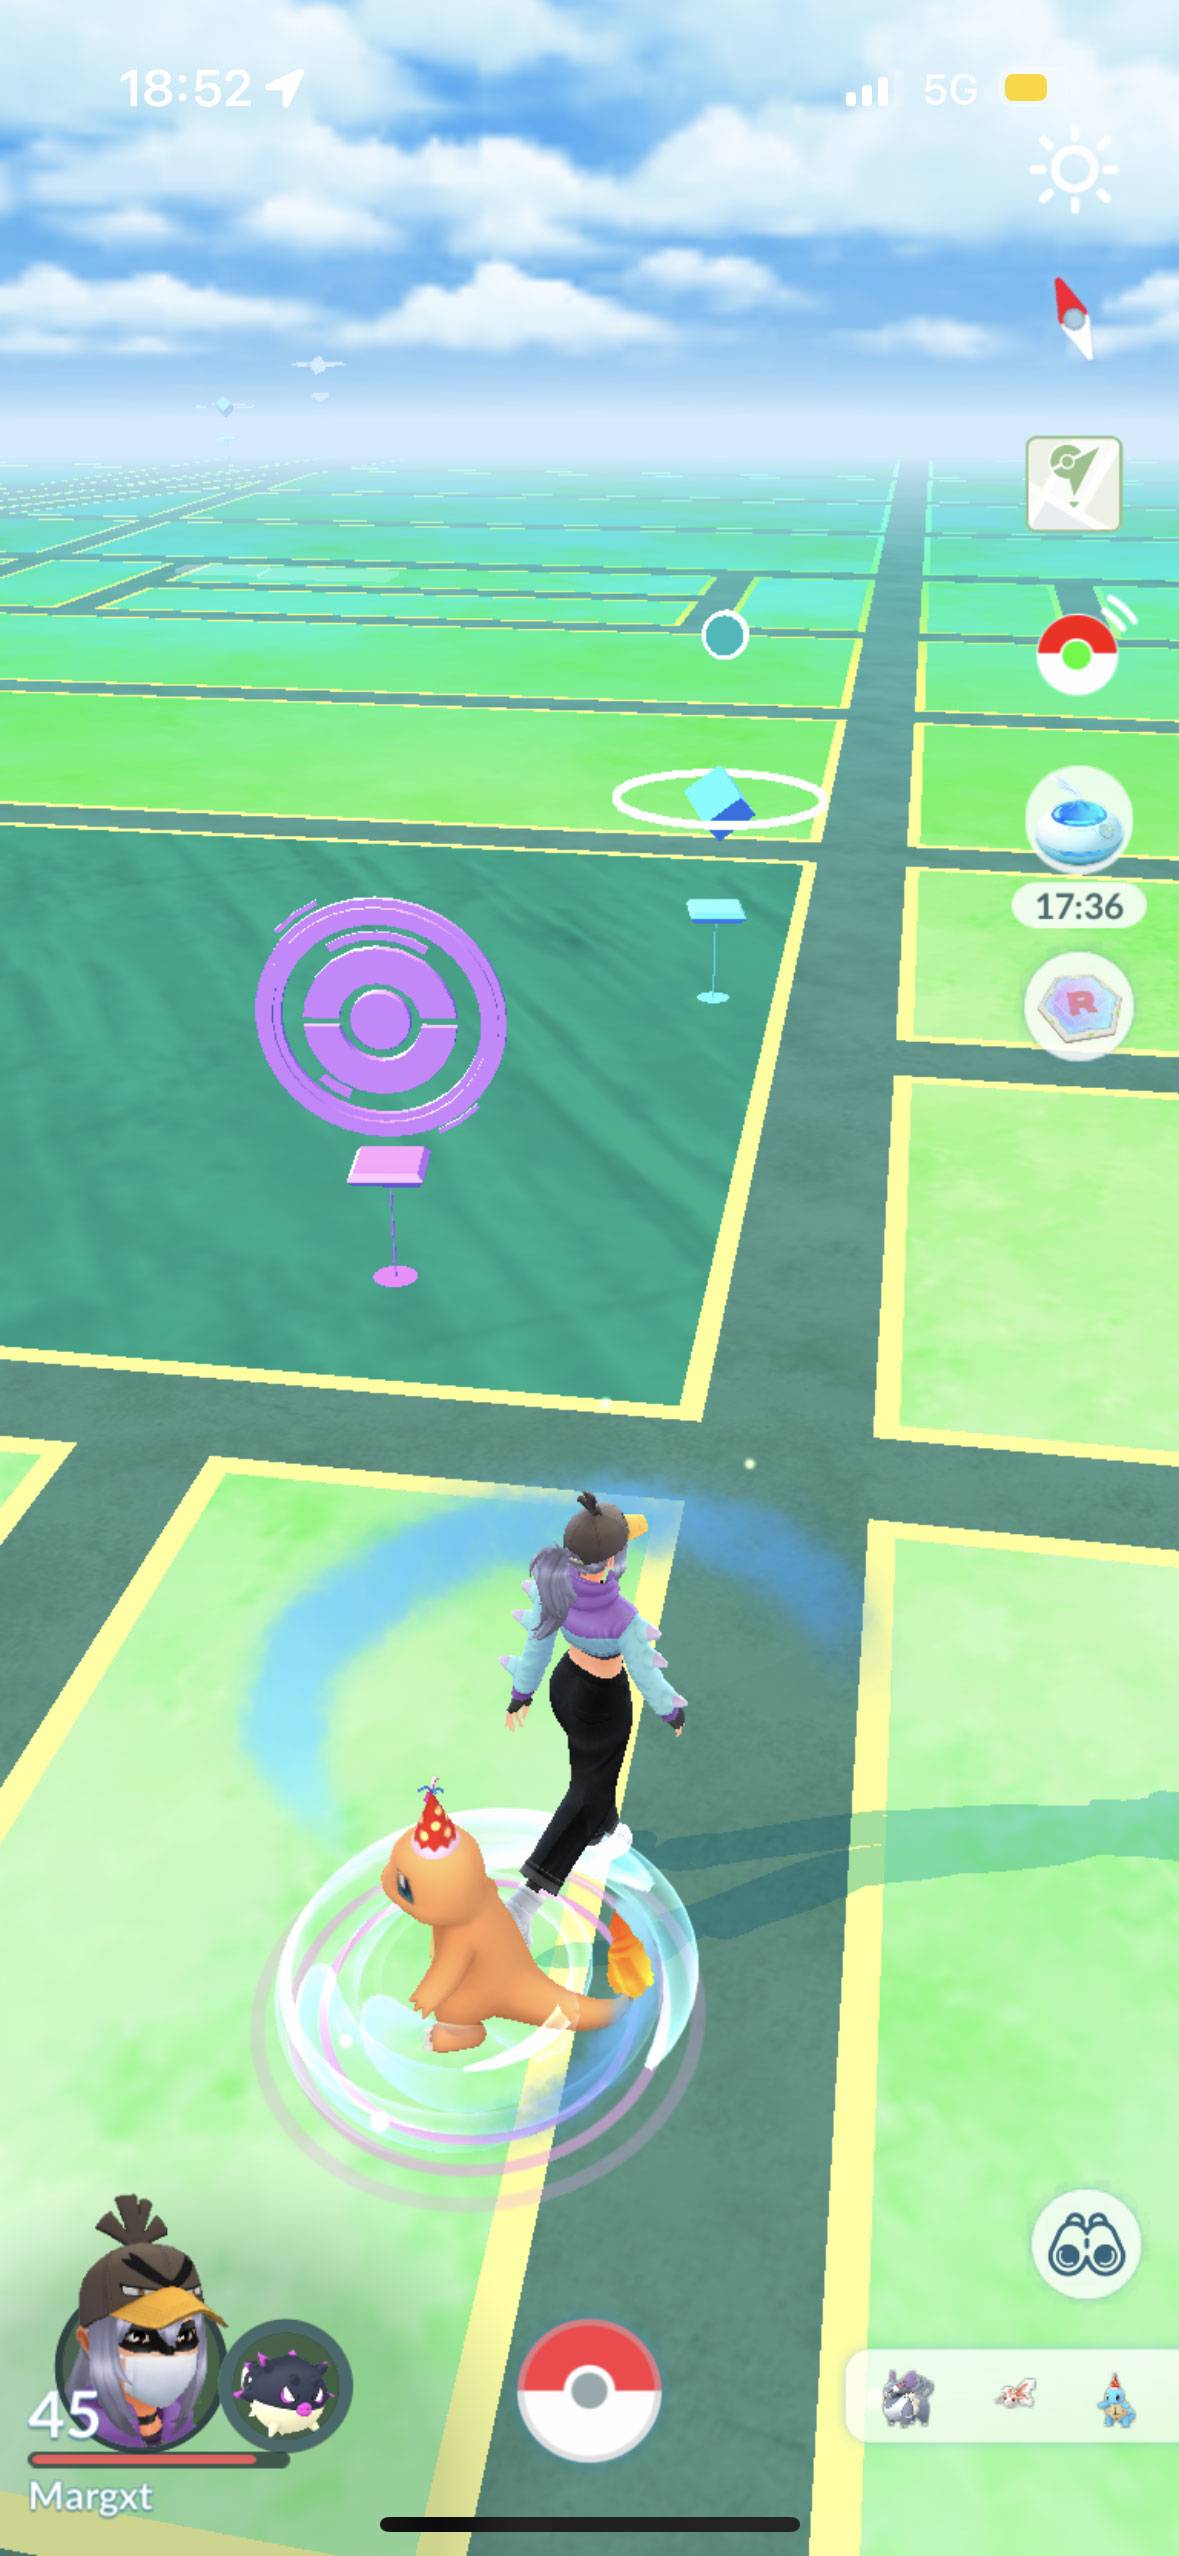 Calendrier des Épreuves PokéStop sur Pokémon Go